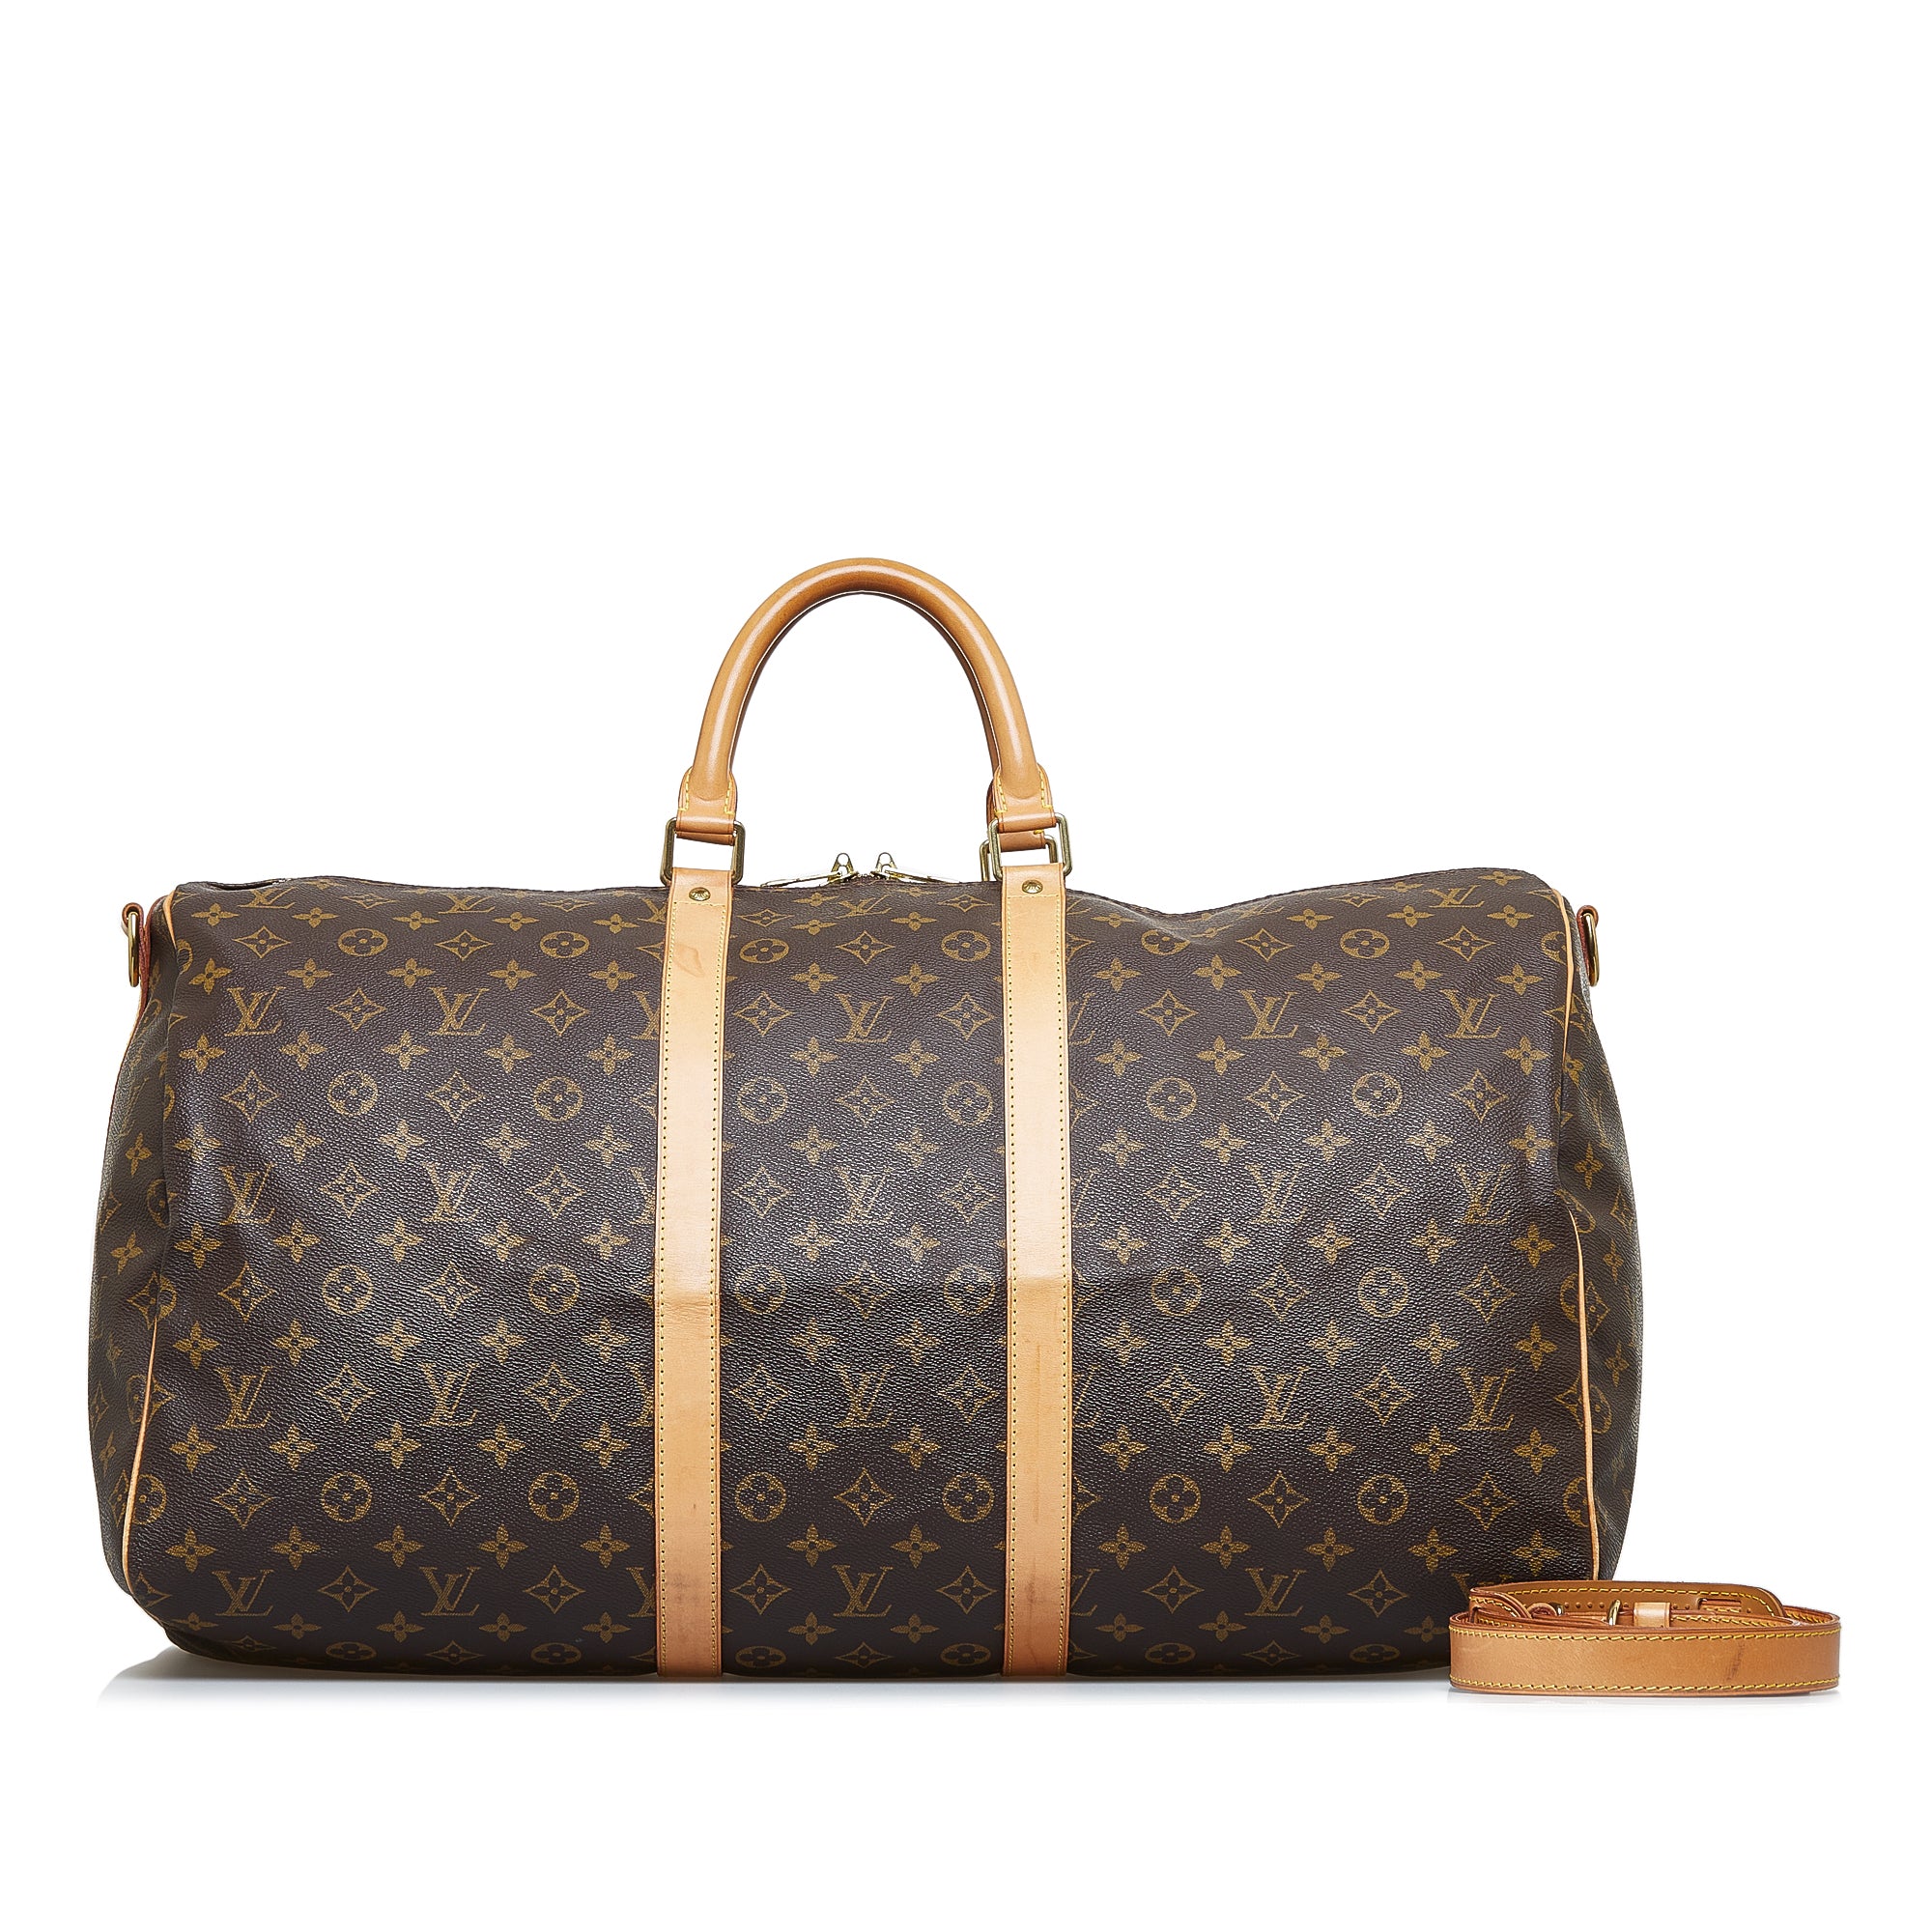 Pre-Owned Louis Vuitton Brea MM Tote Bag - Pristine Condition